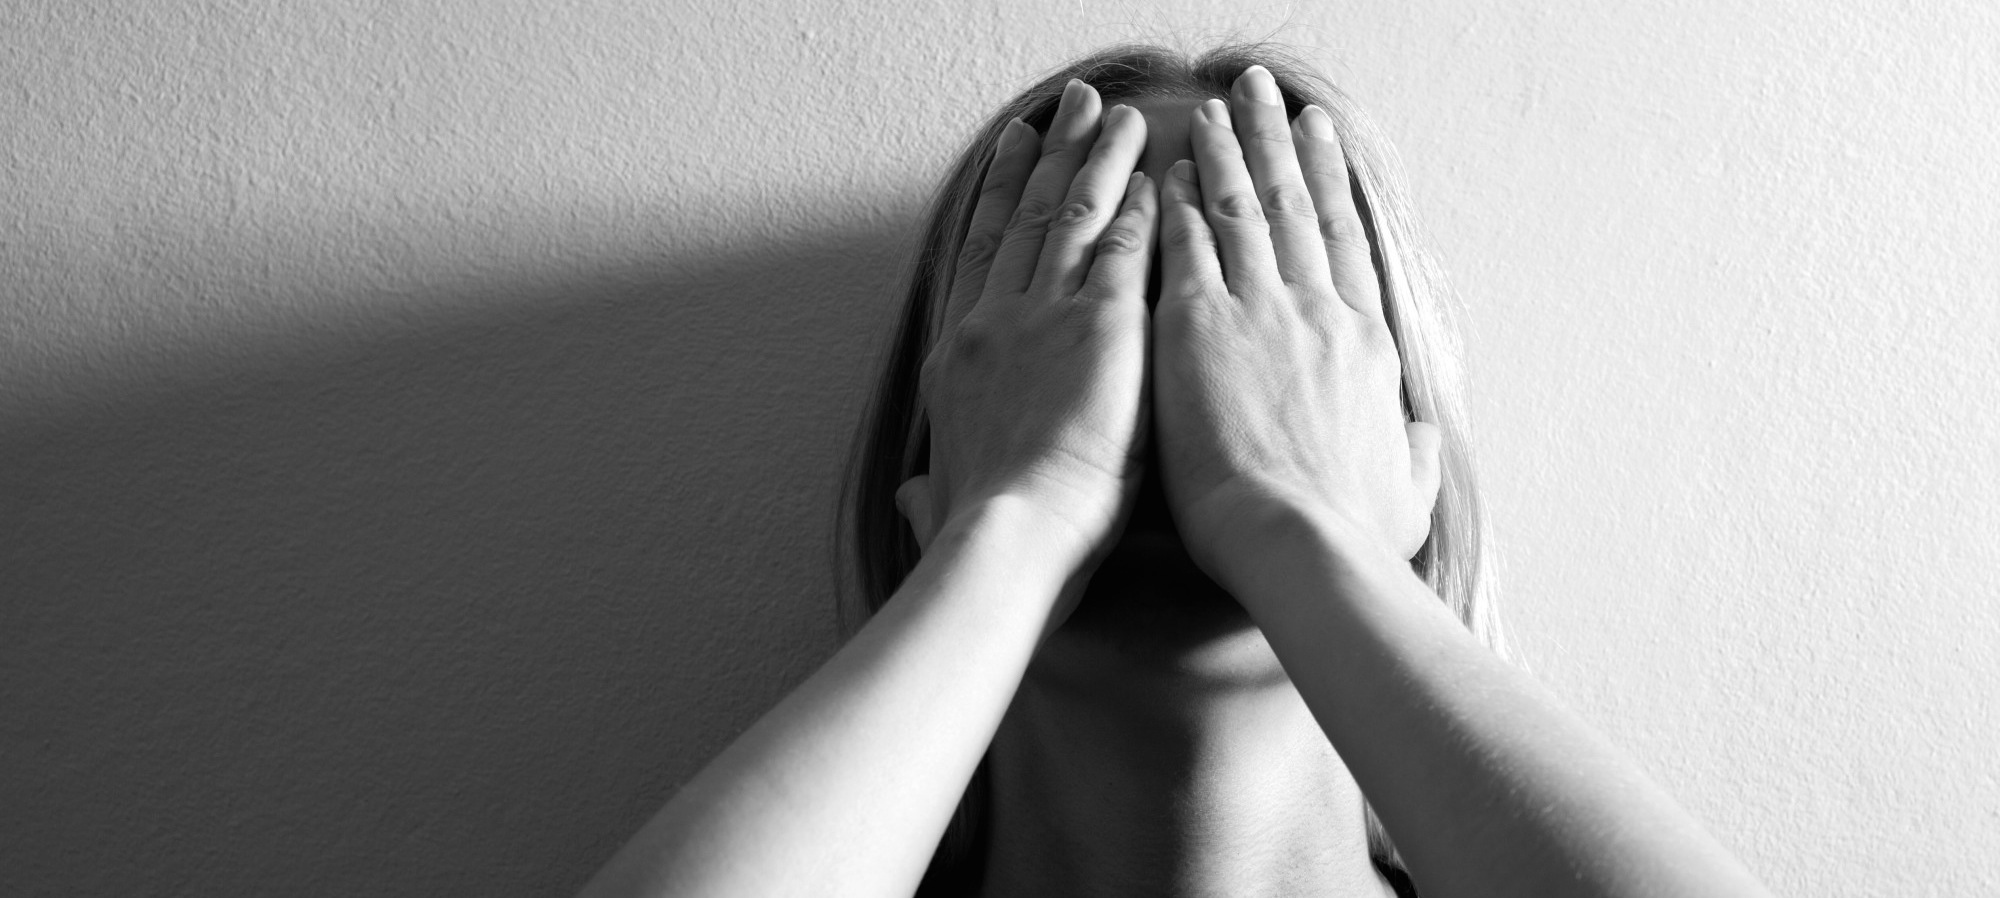 آیا افراد افسرده واقع گراتر هستند؟